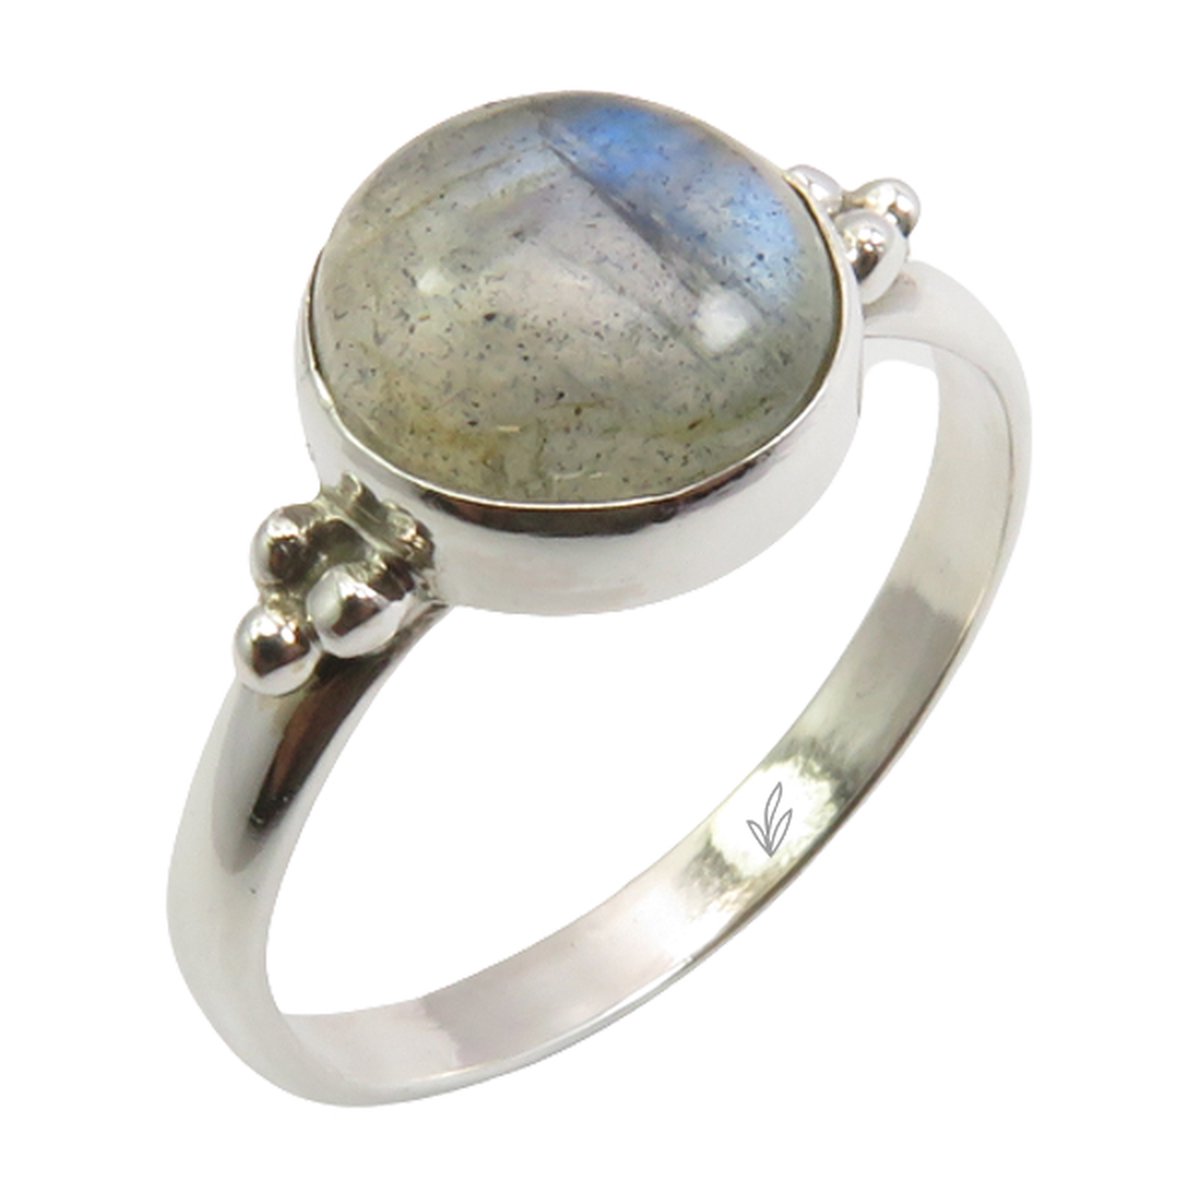 Natuursieraad - 925 sterling zilver labradoriet ring maat 19.00 - luxe edelsteen sieraad - natuursteen